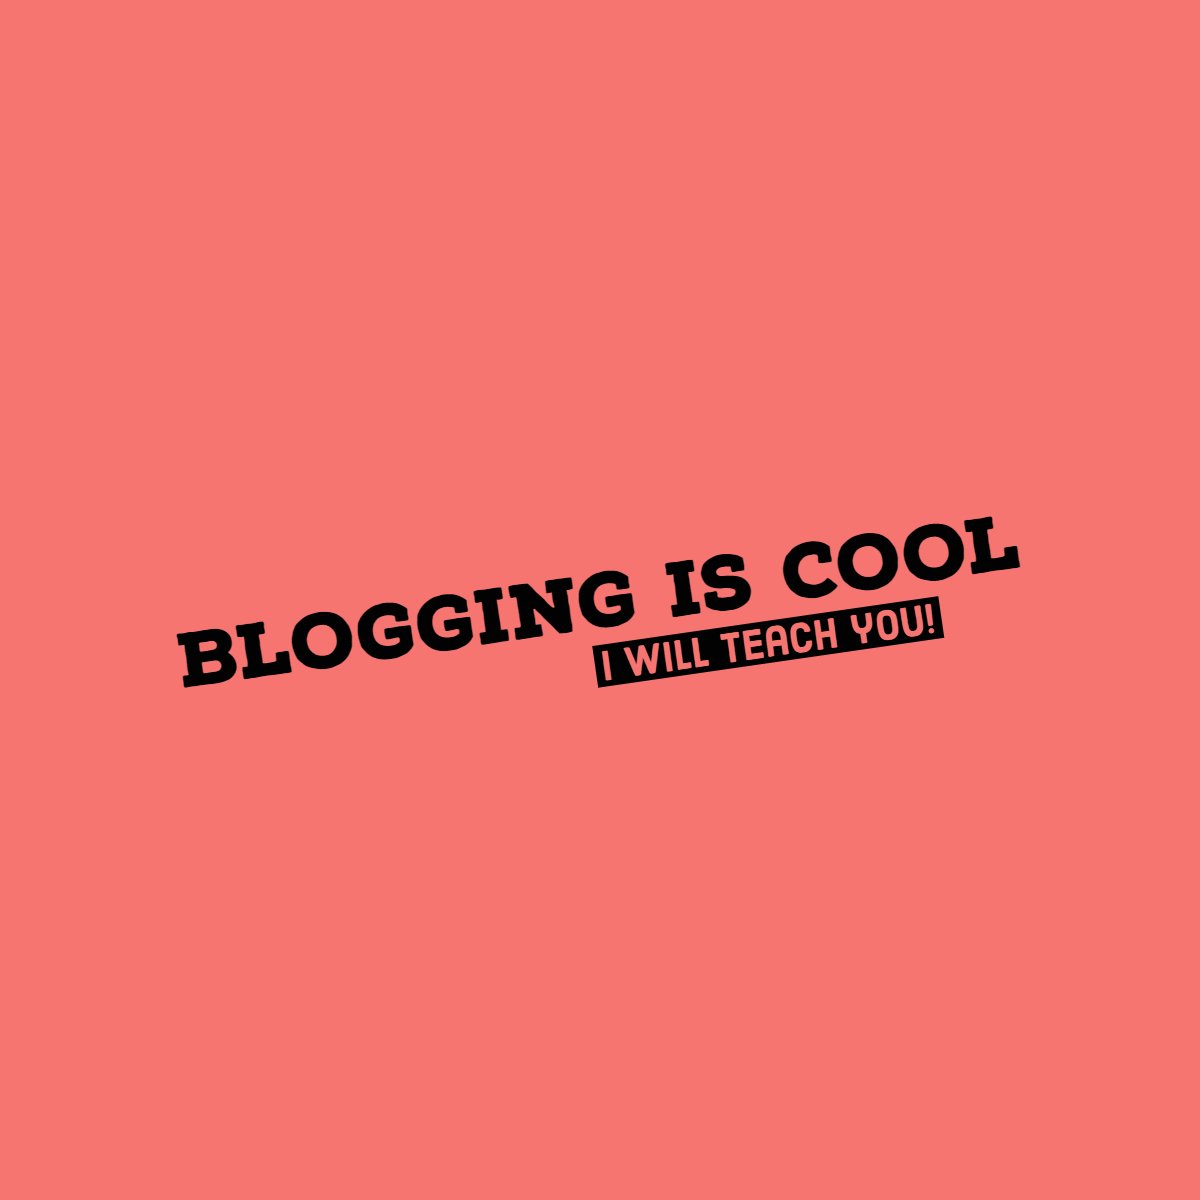 bloggingiscool.com why menus are necessary for blogs